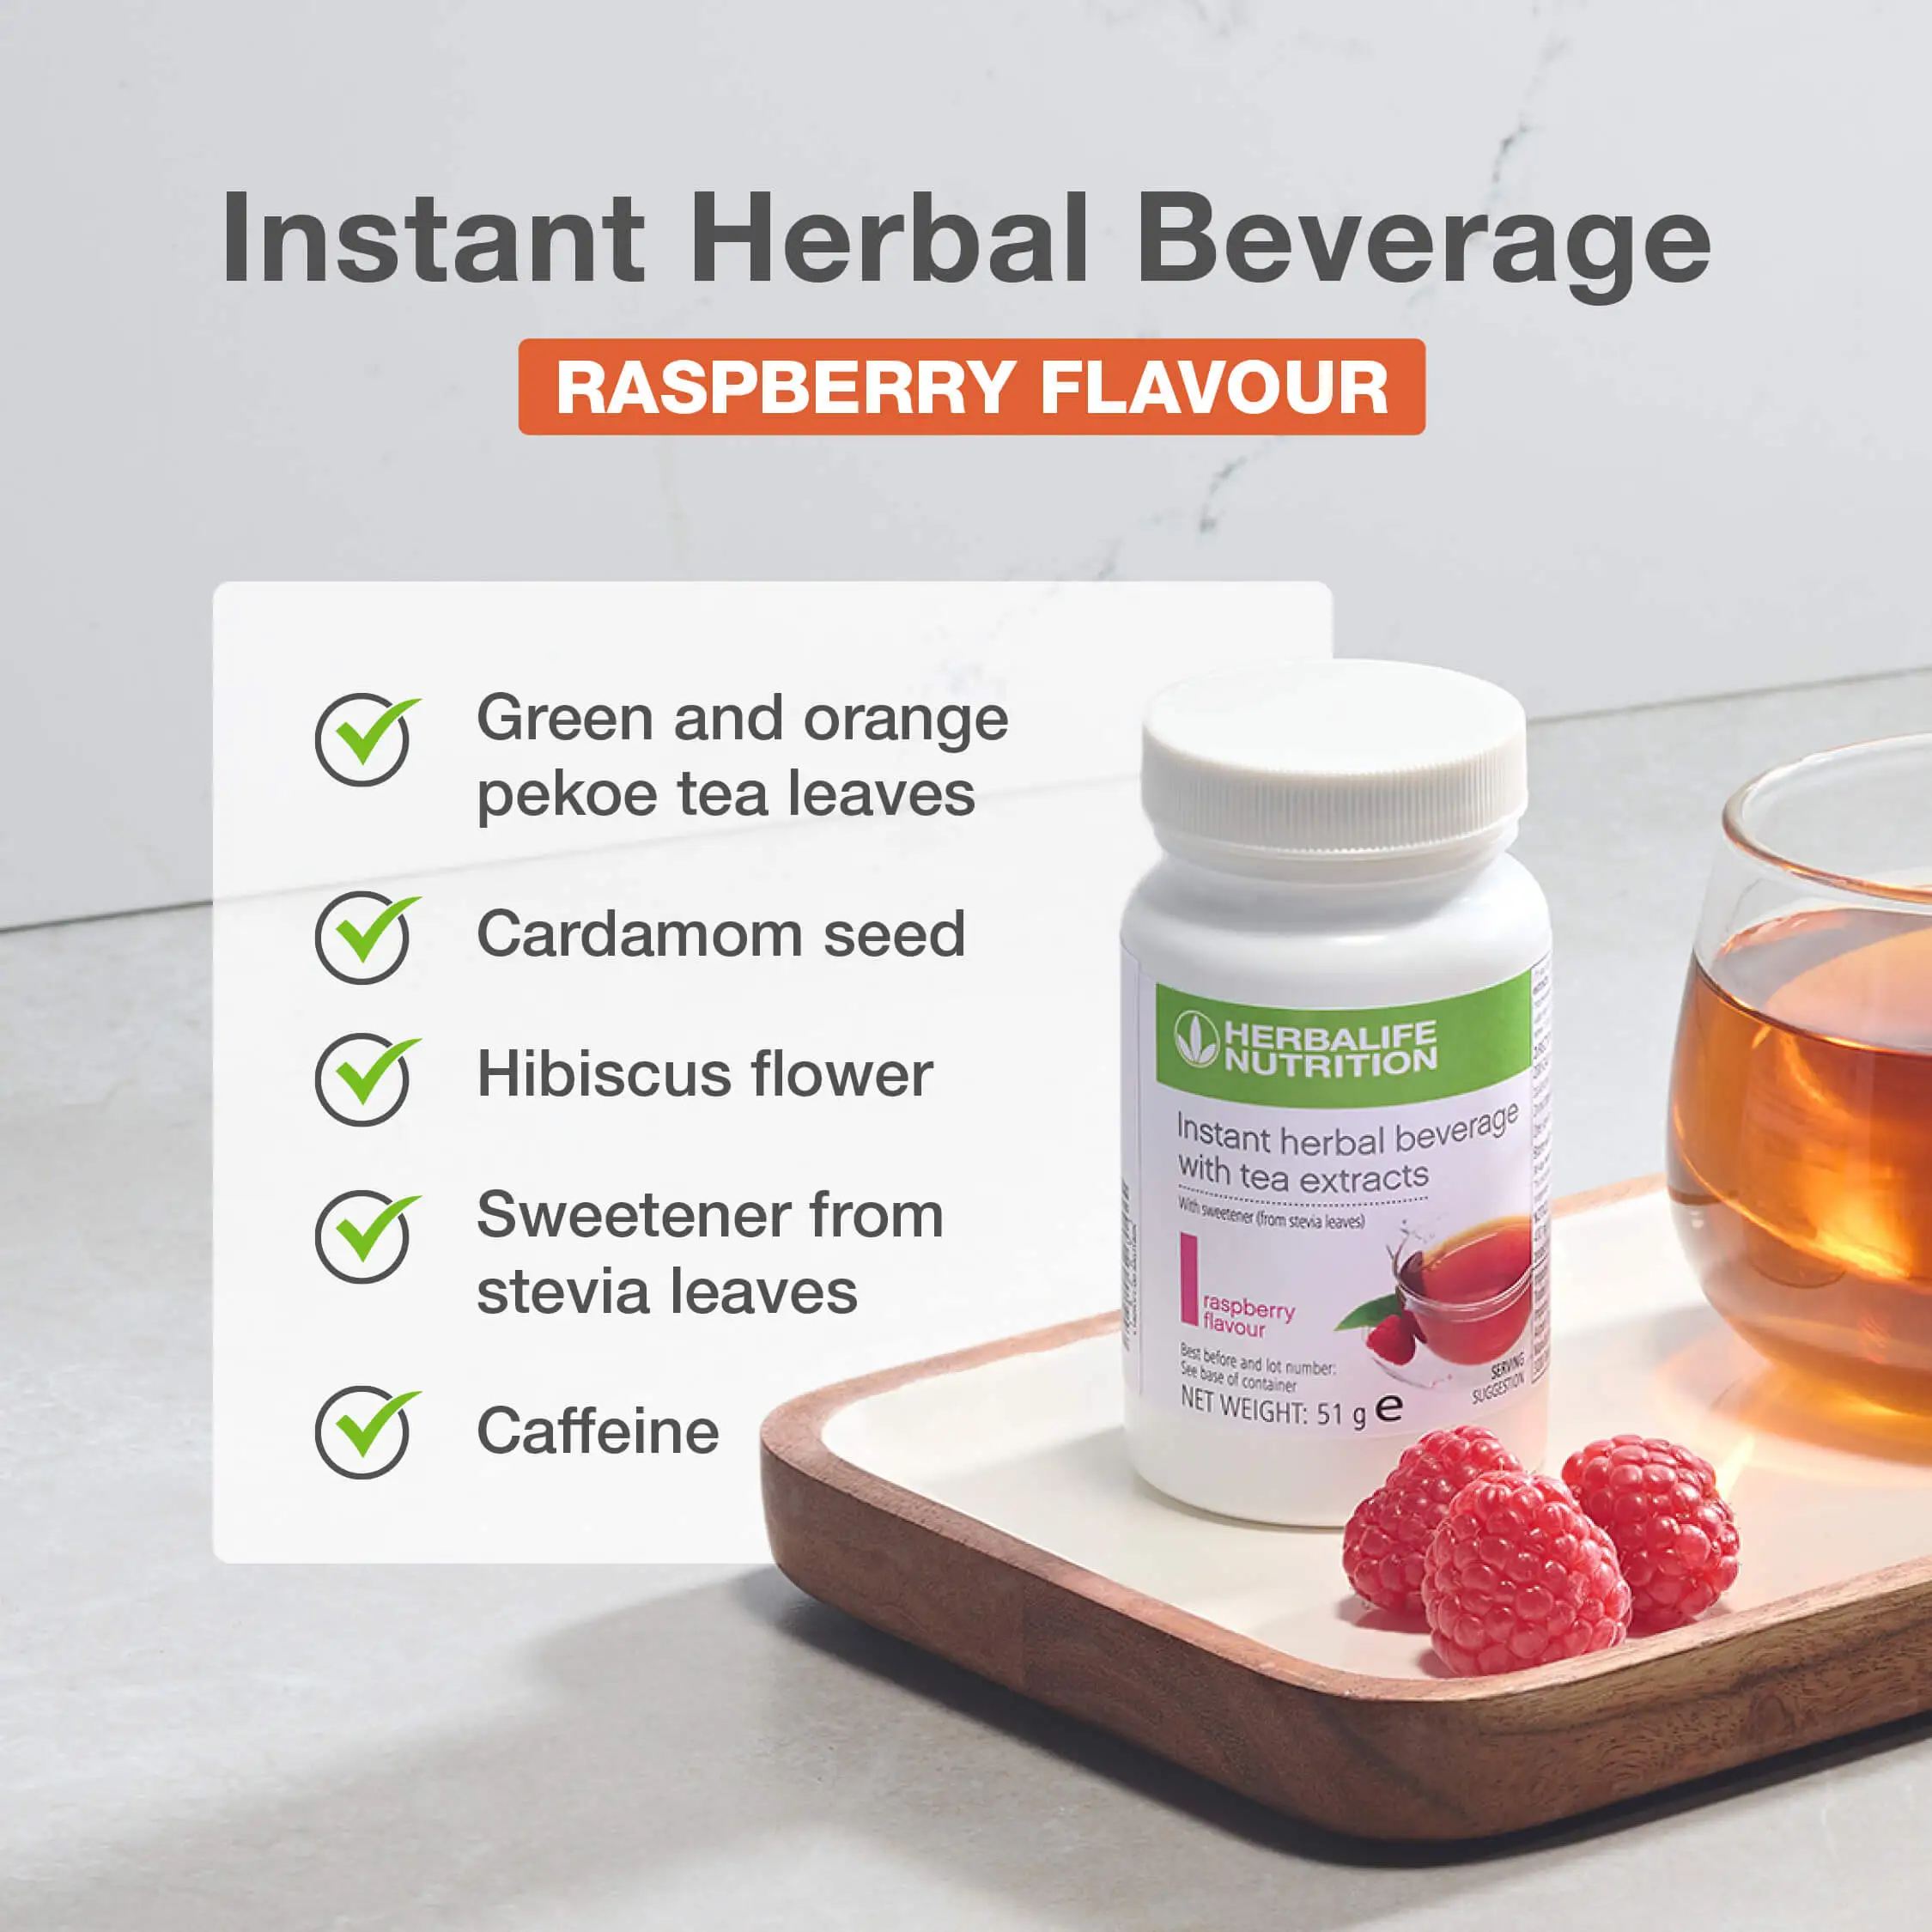 Herbalife Instant herbal beverage tea flavour